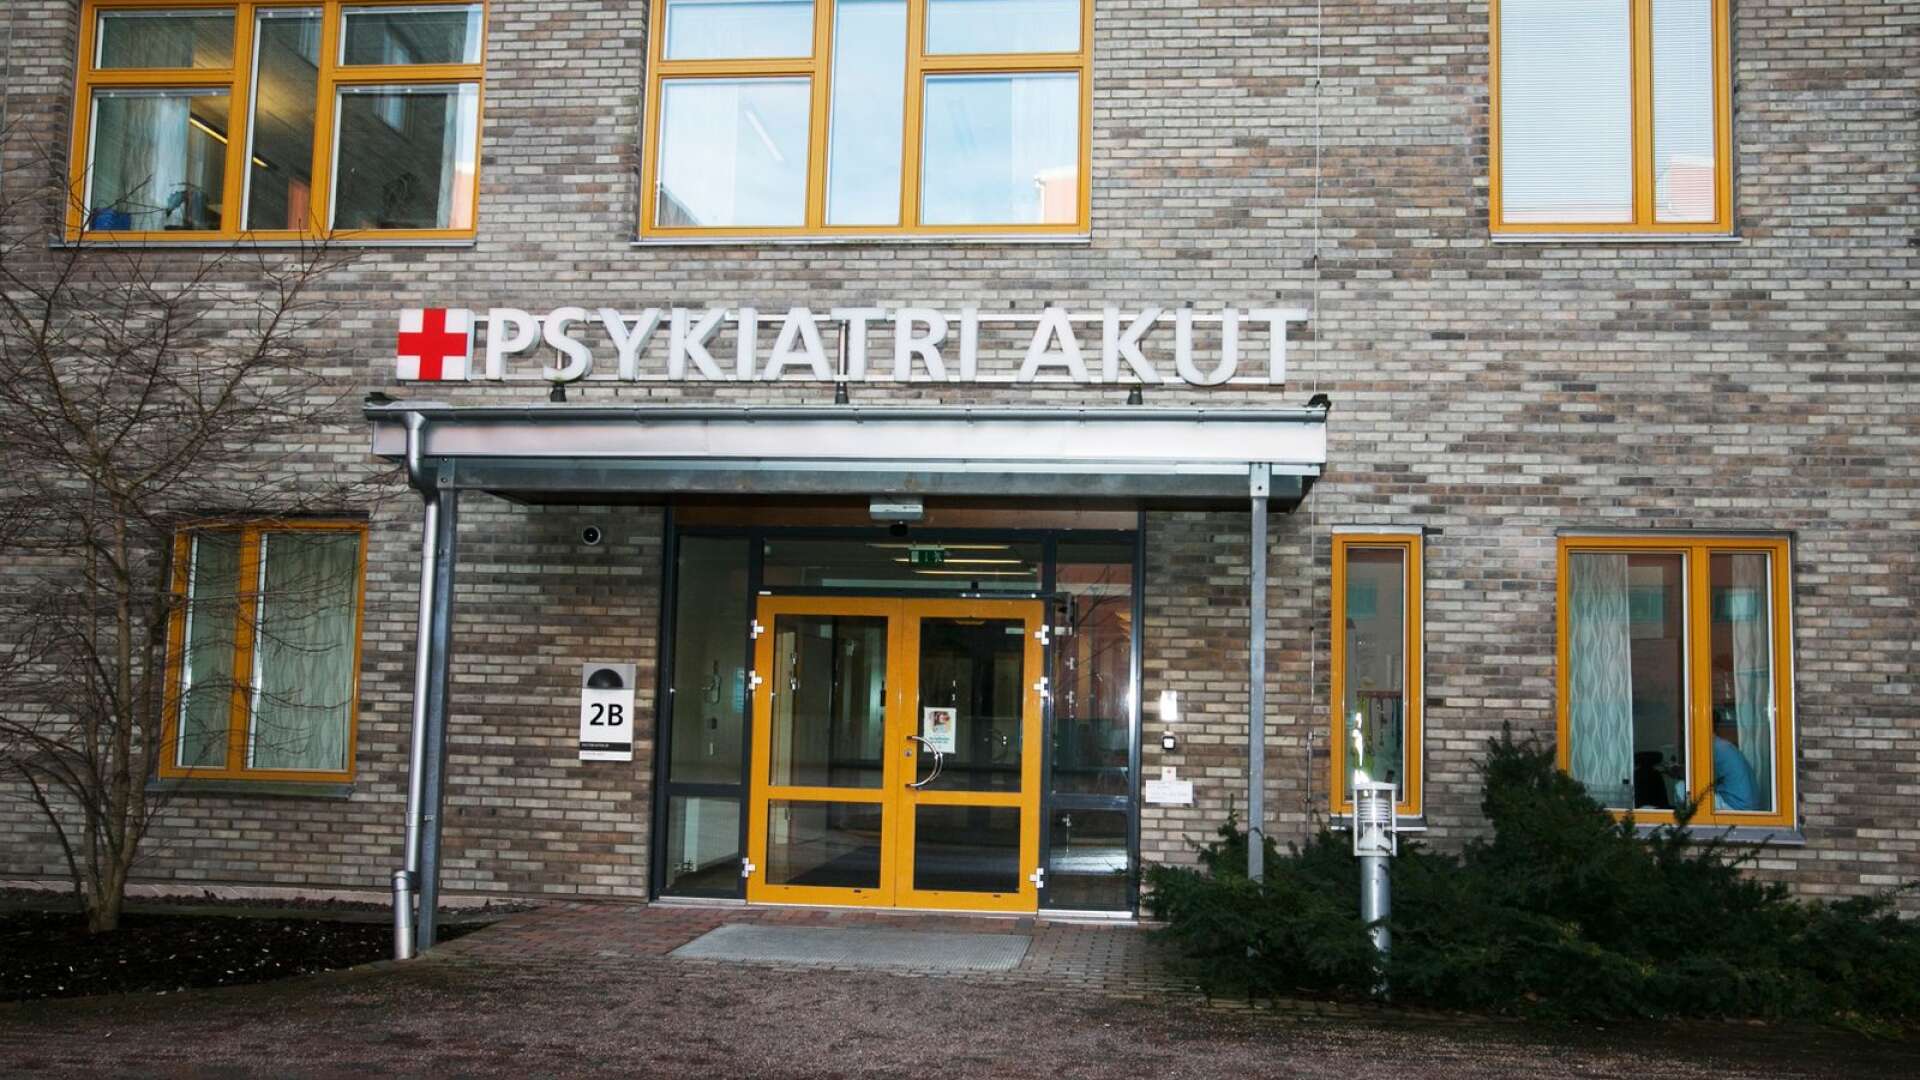 &quot;Vi bedömer inte att patientsäkerheten är hotad&quot;, säger Agneta Nilsson Lohse, verksamhetschef för den psykiatriska slutenvården, angående situationen i psykiatrihuset i Karlstad.